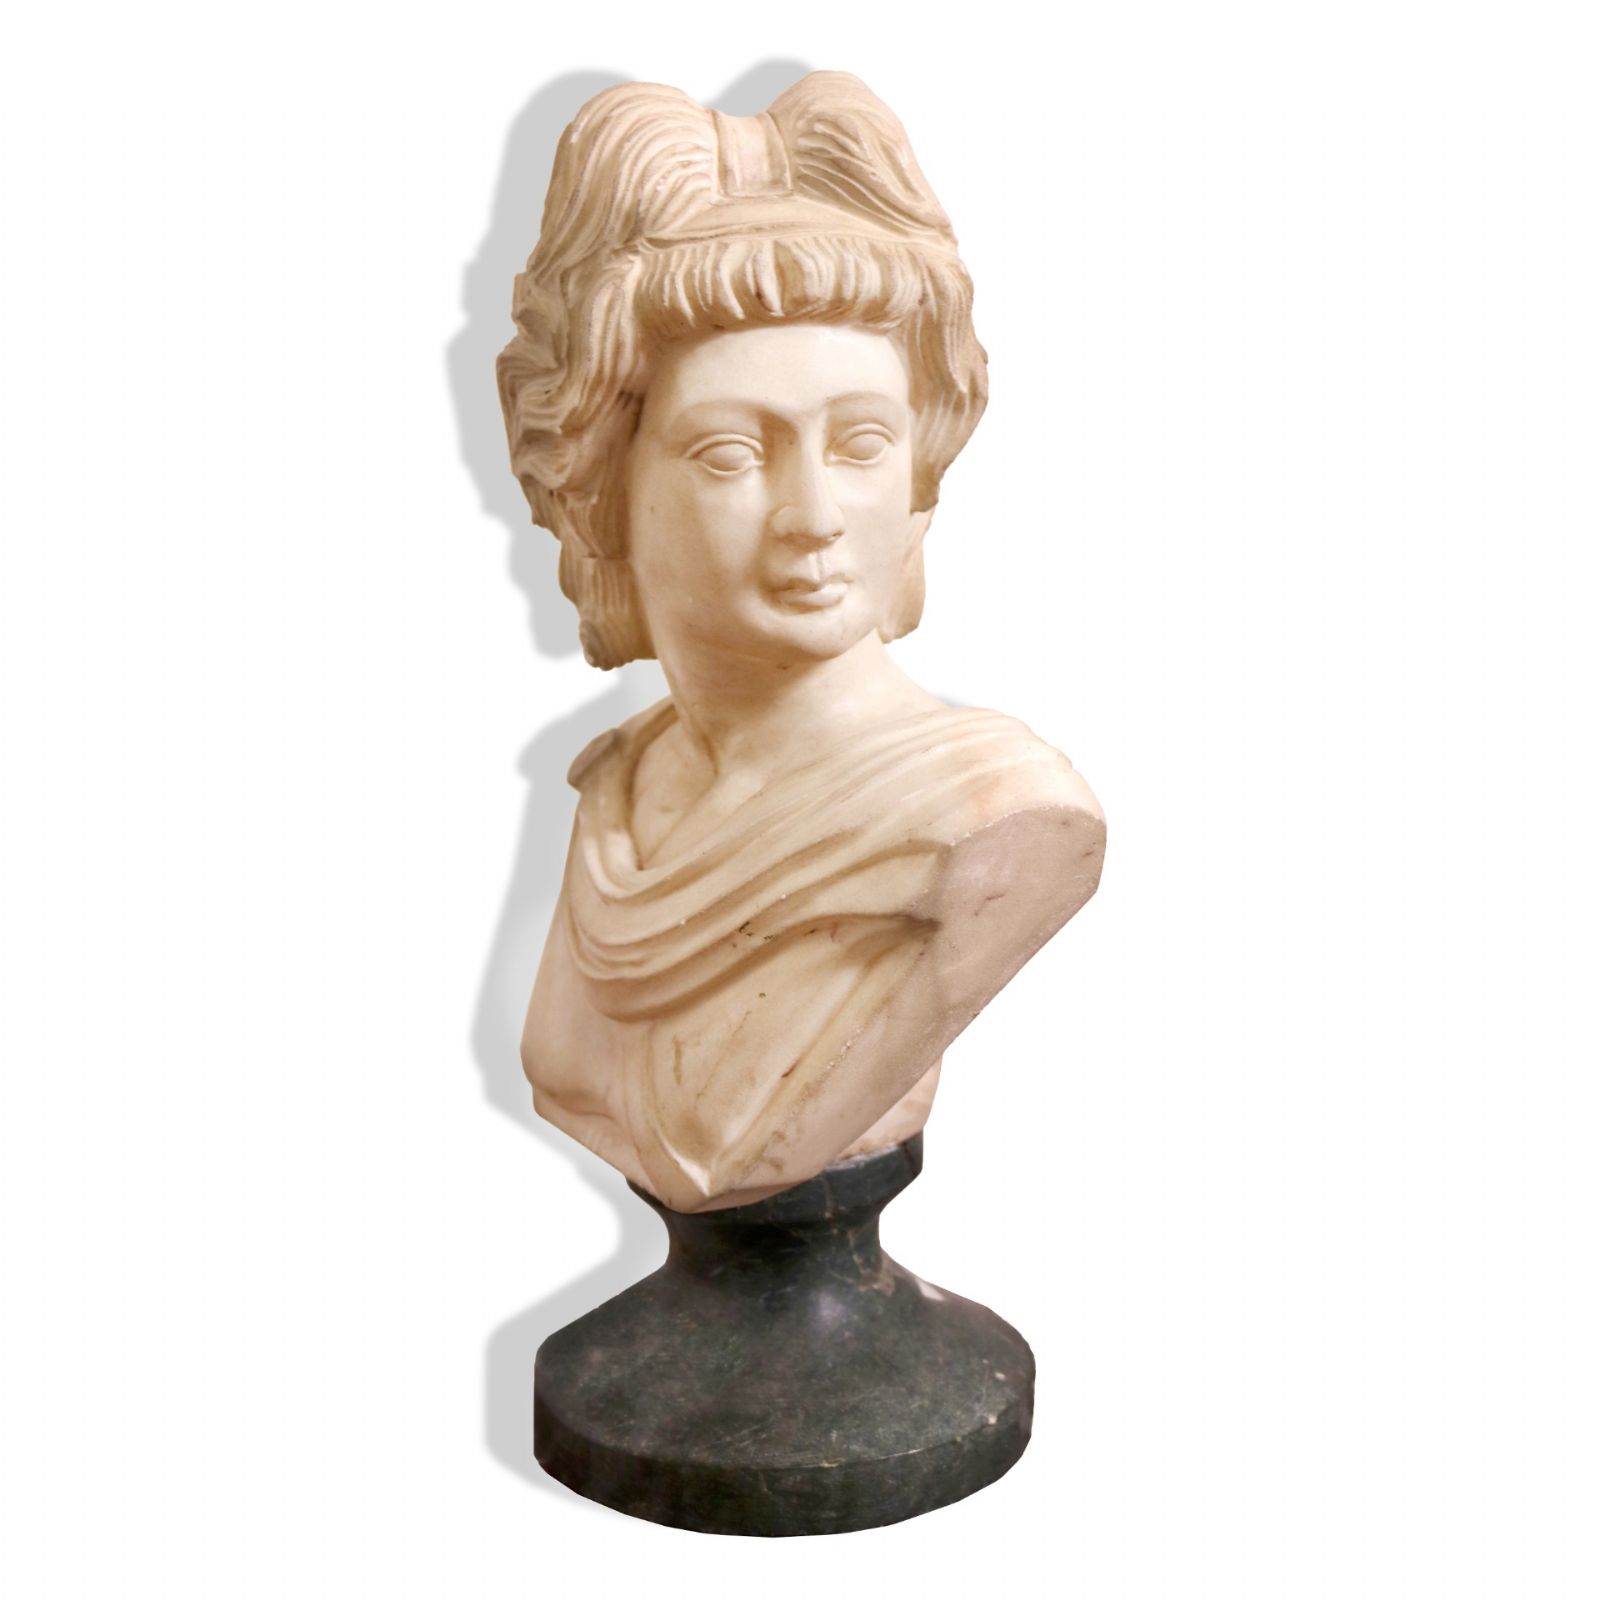 Bustino antico in marmo. Epoca 1800. - Statue Antiche - Sculture Antiche - Prodotti - Antichità Fiorillo